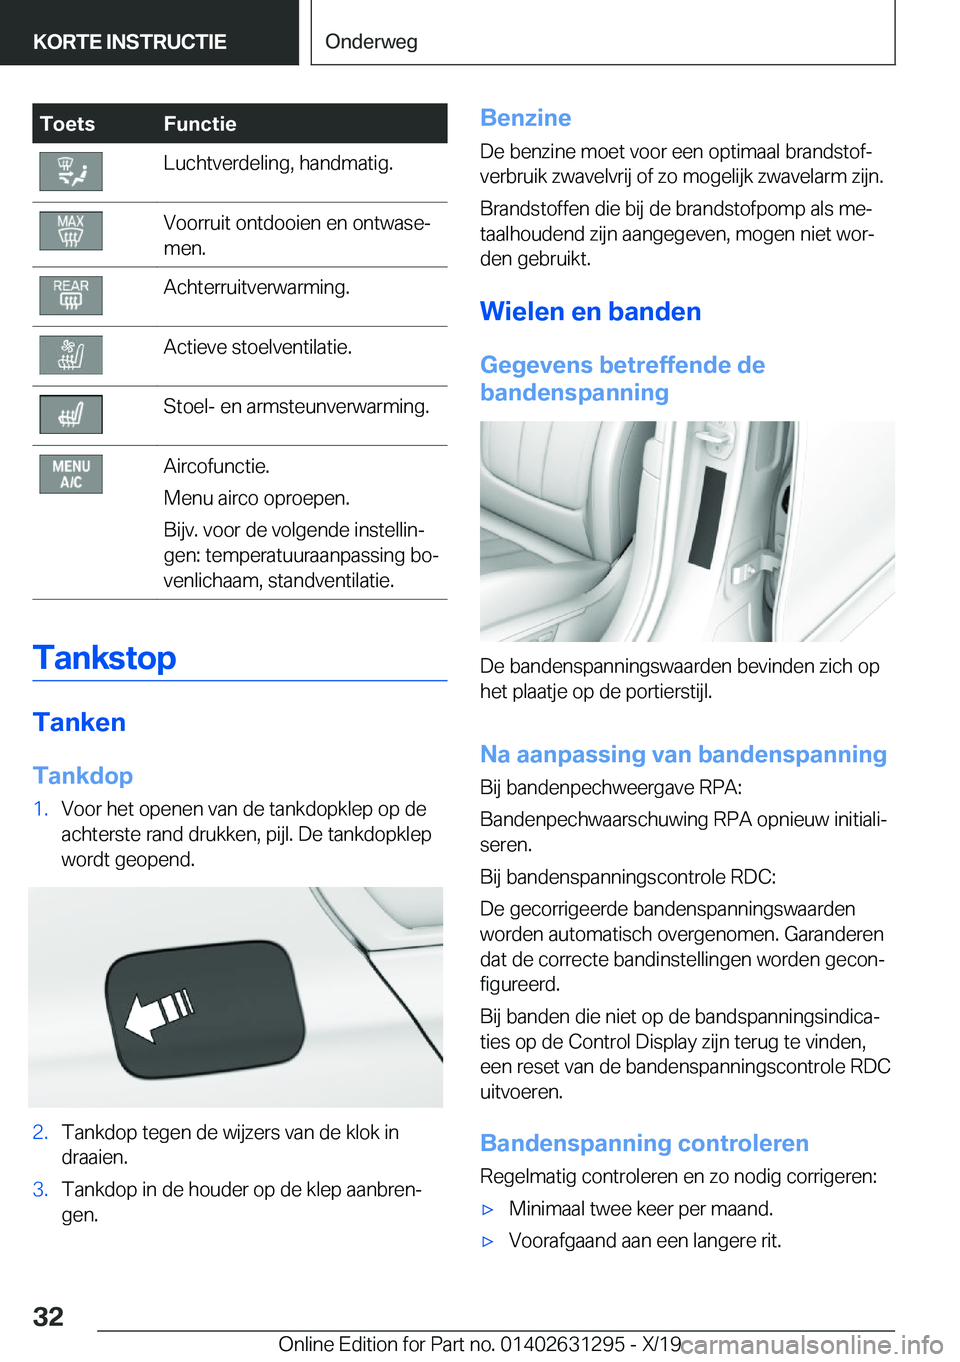 BMW M8 2020  Instructieboekjes (in Dutch) �T�o�e�t�s�F�u�n�c�t�i�e�L�u�c�h�t�v�e�r�d�e�l�i�n�g�,��h�a�n�d�m�a�t�i�g�.�V�o�o�r�r�u�i�t��o�n�t�d�o�o�i�e�n��e�n��o�n�t�w�a�s�ej
�m�e�n�.�A�c�h�t�e�r�r�u�i�t�v�e�r�w�a�r�m�i�n�g�.�A�c�t�i�e�v�